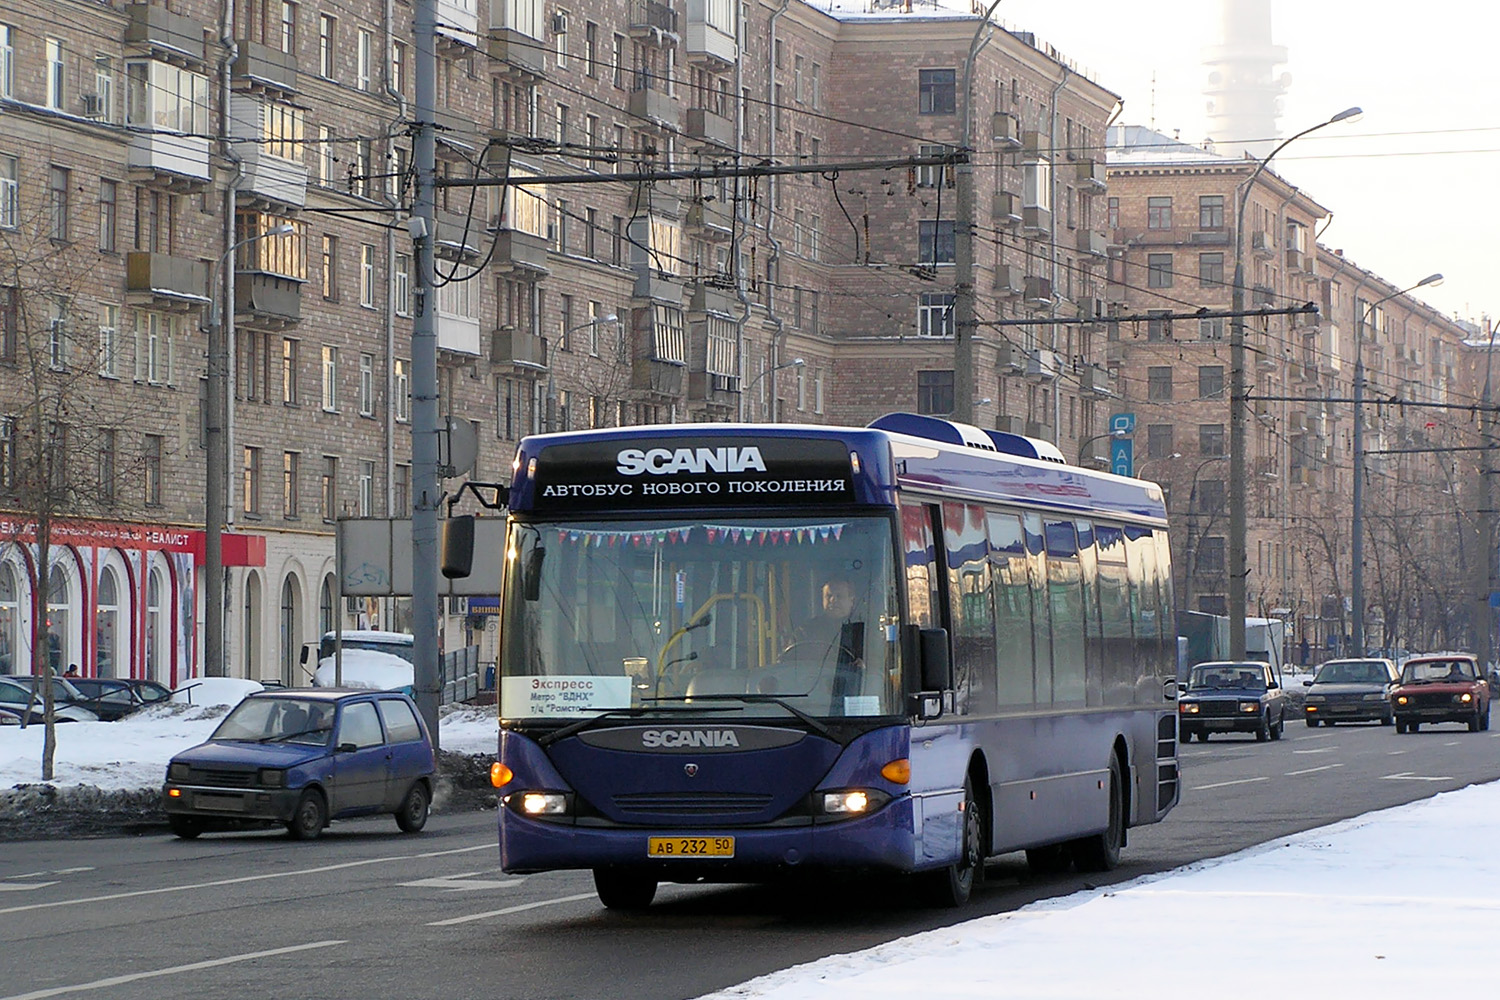 Московская область, Scania OmniLink I (Скания-Питер) № АВ 232 50